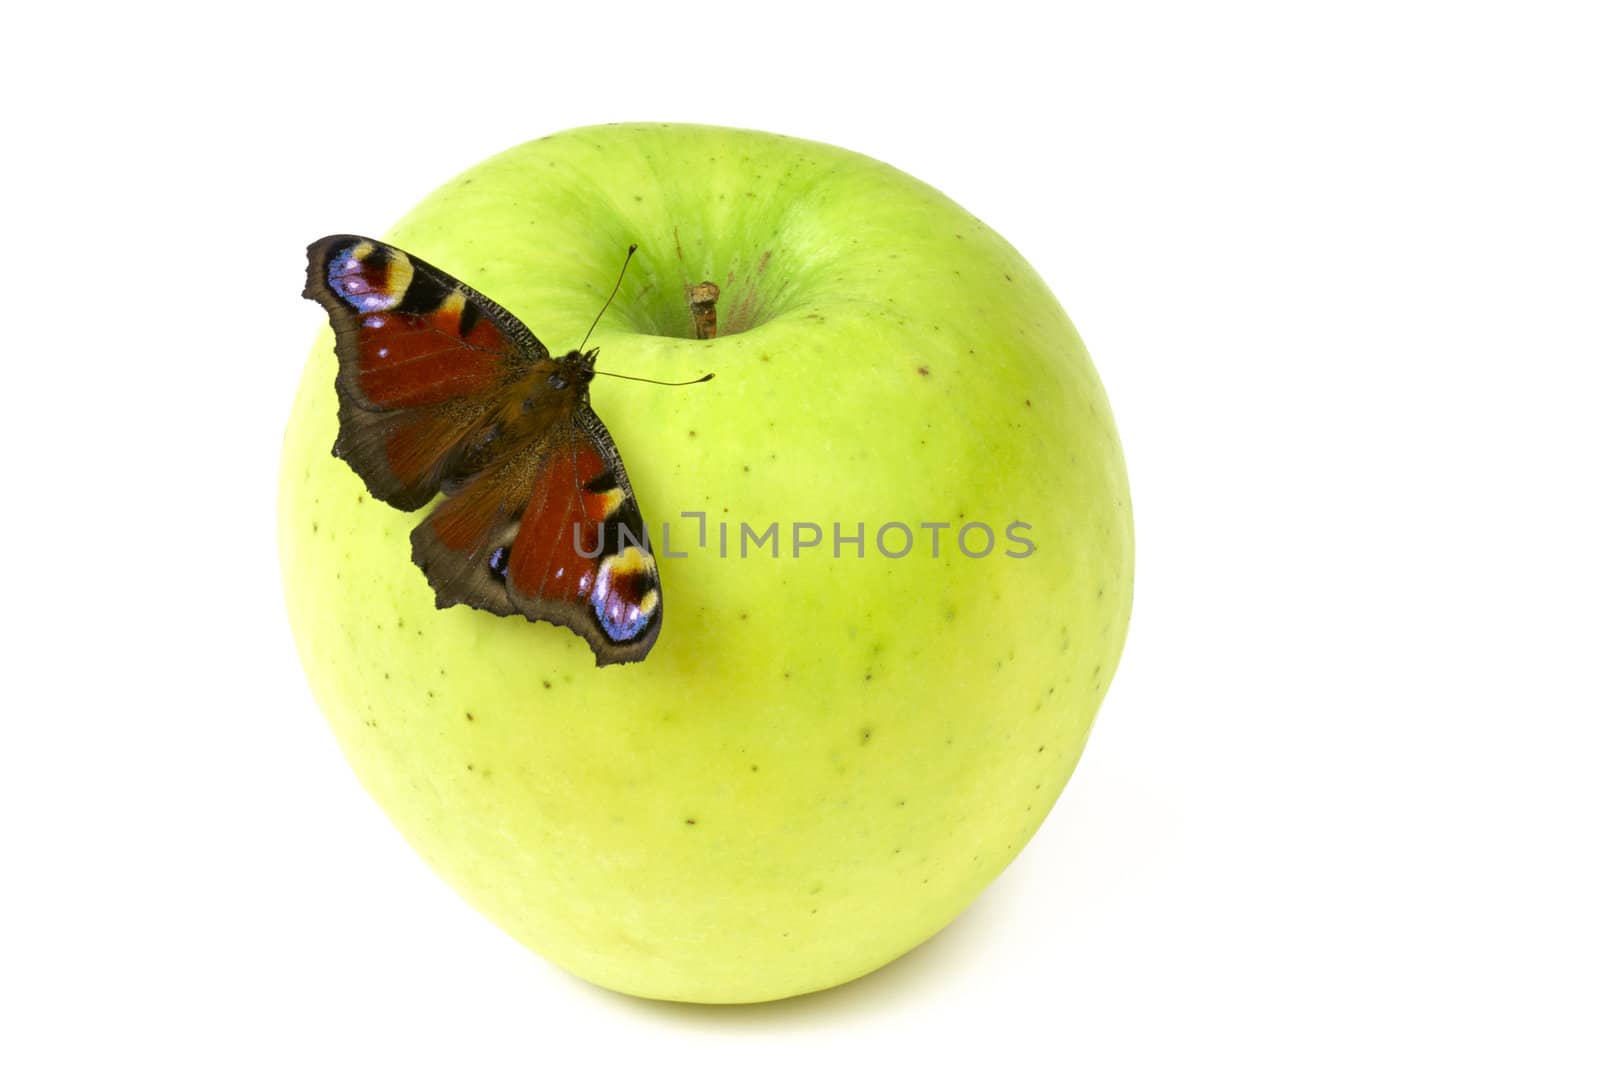 Butterfly on apple by Kamensky